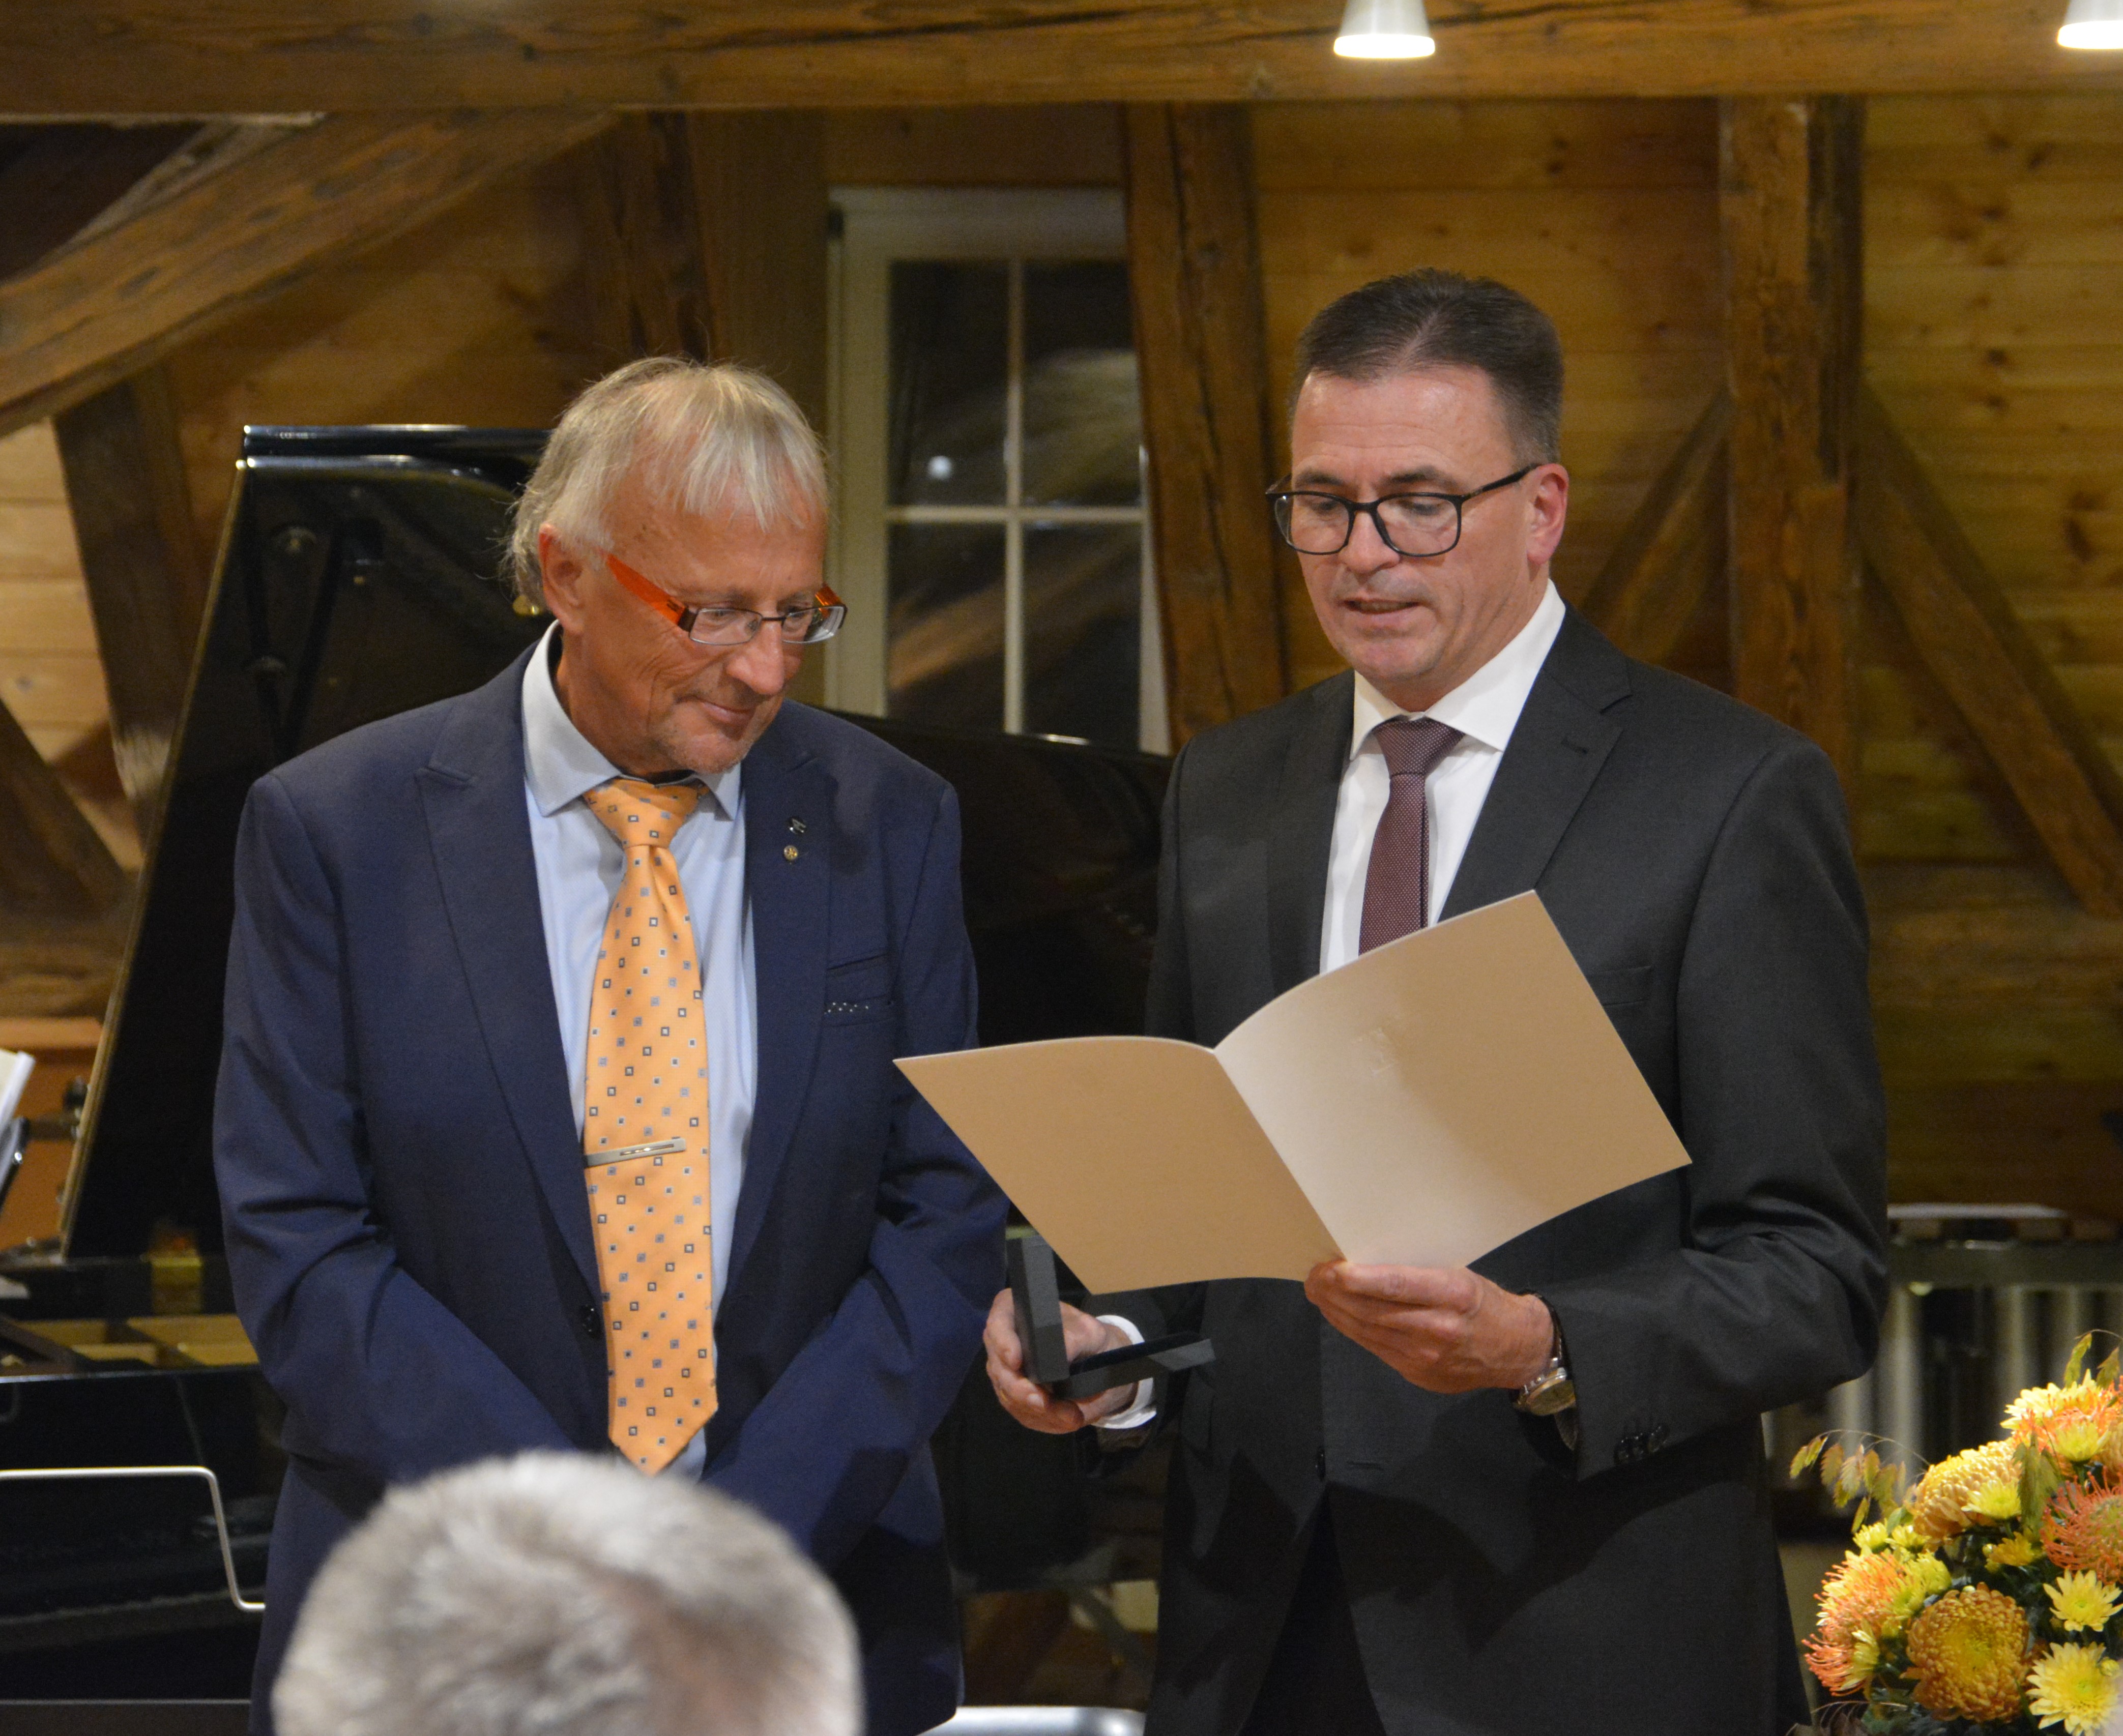  Johannes Josef Miller (links) wurde die Staufermedaille des Landes Baden-Württemberg von Landrat Dr. Joachim Bläse - stellvertretend für Ministerpräsident Winfried Kretschmann - verliehen 